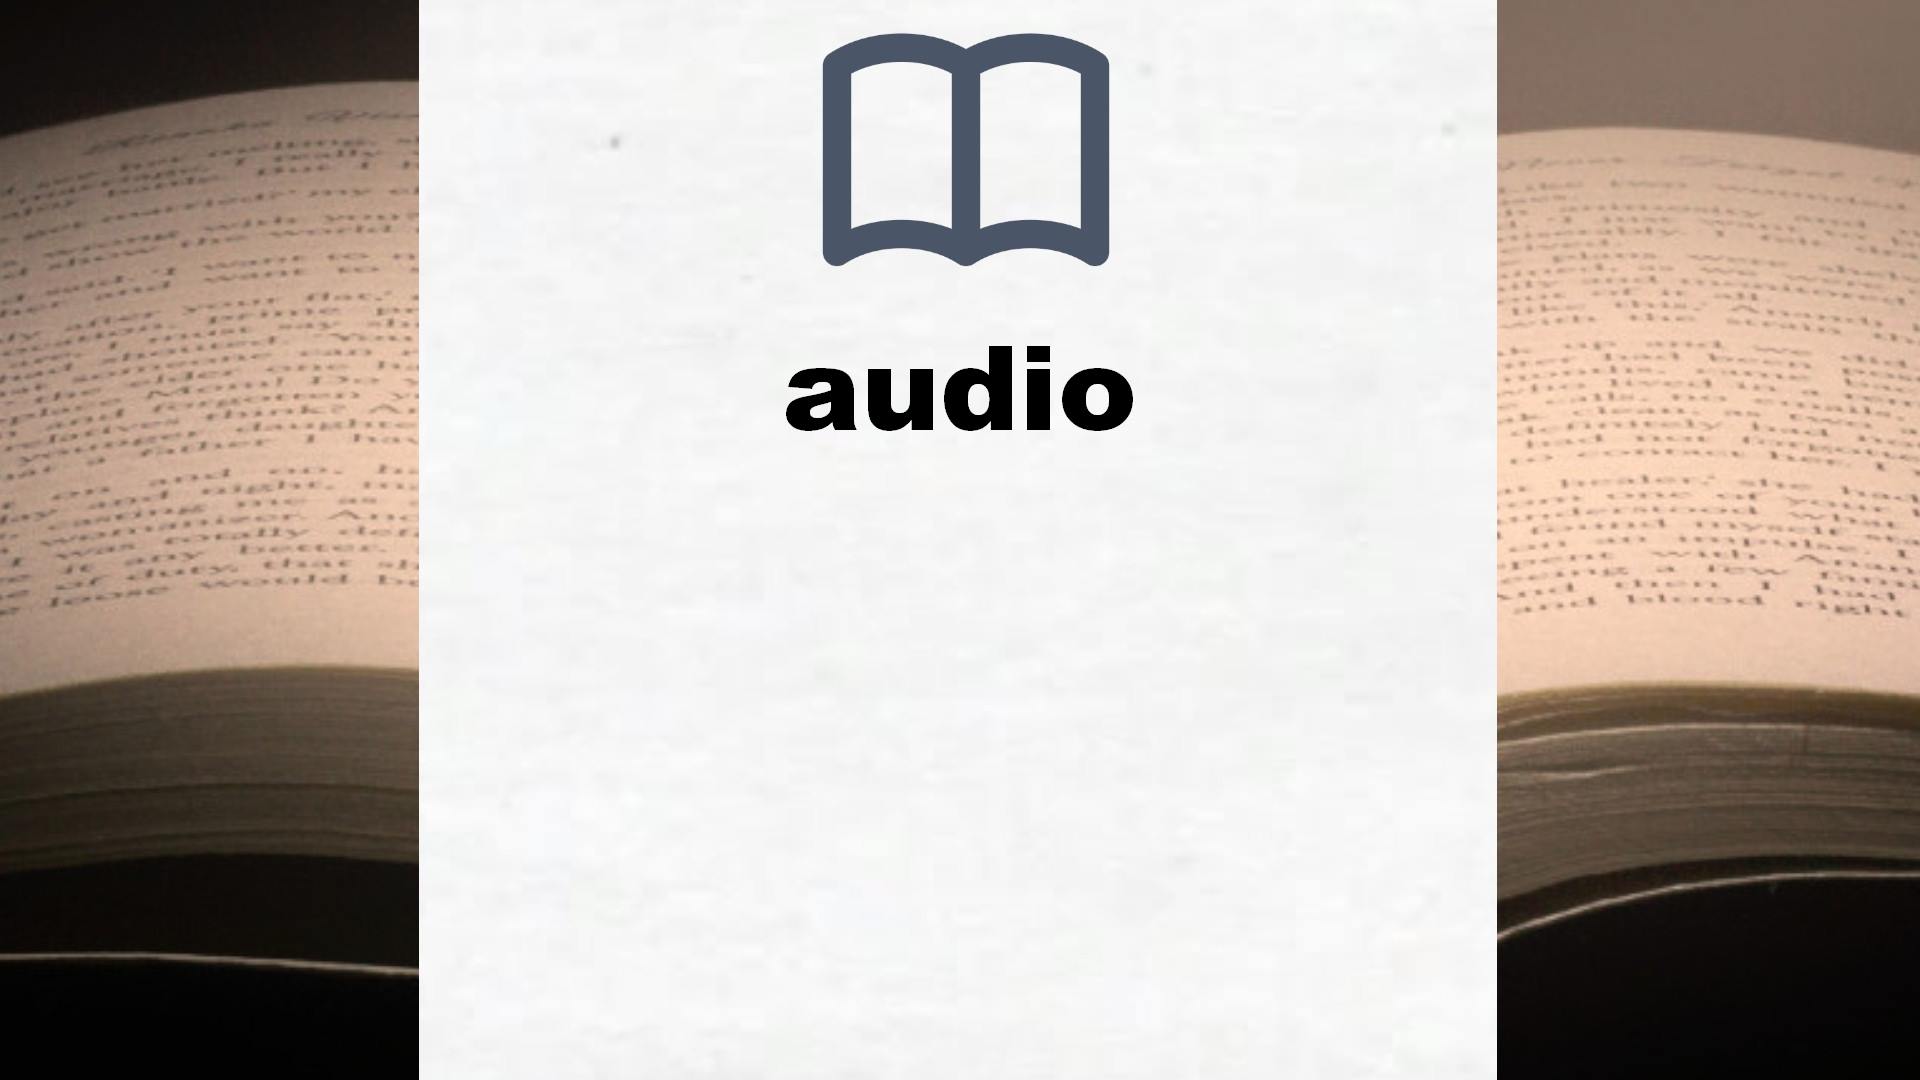 Libros sobre audio